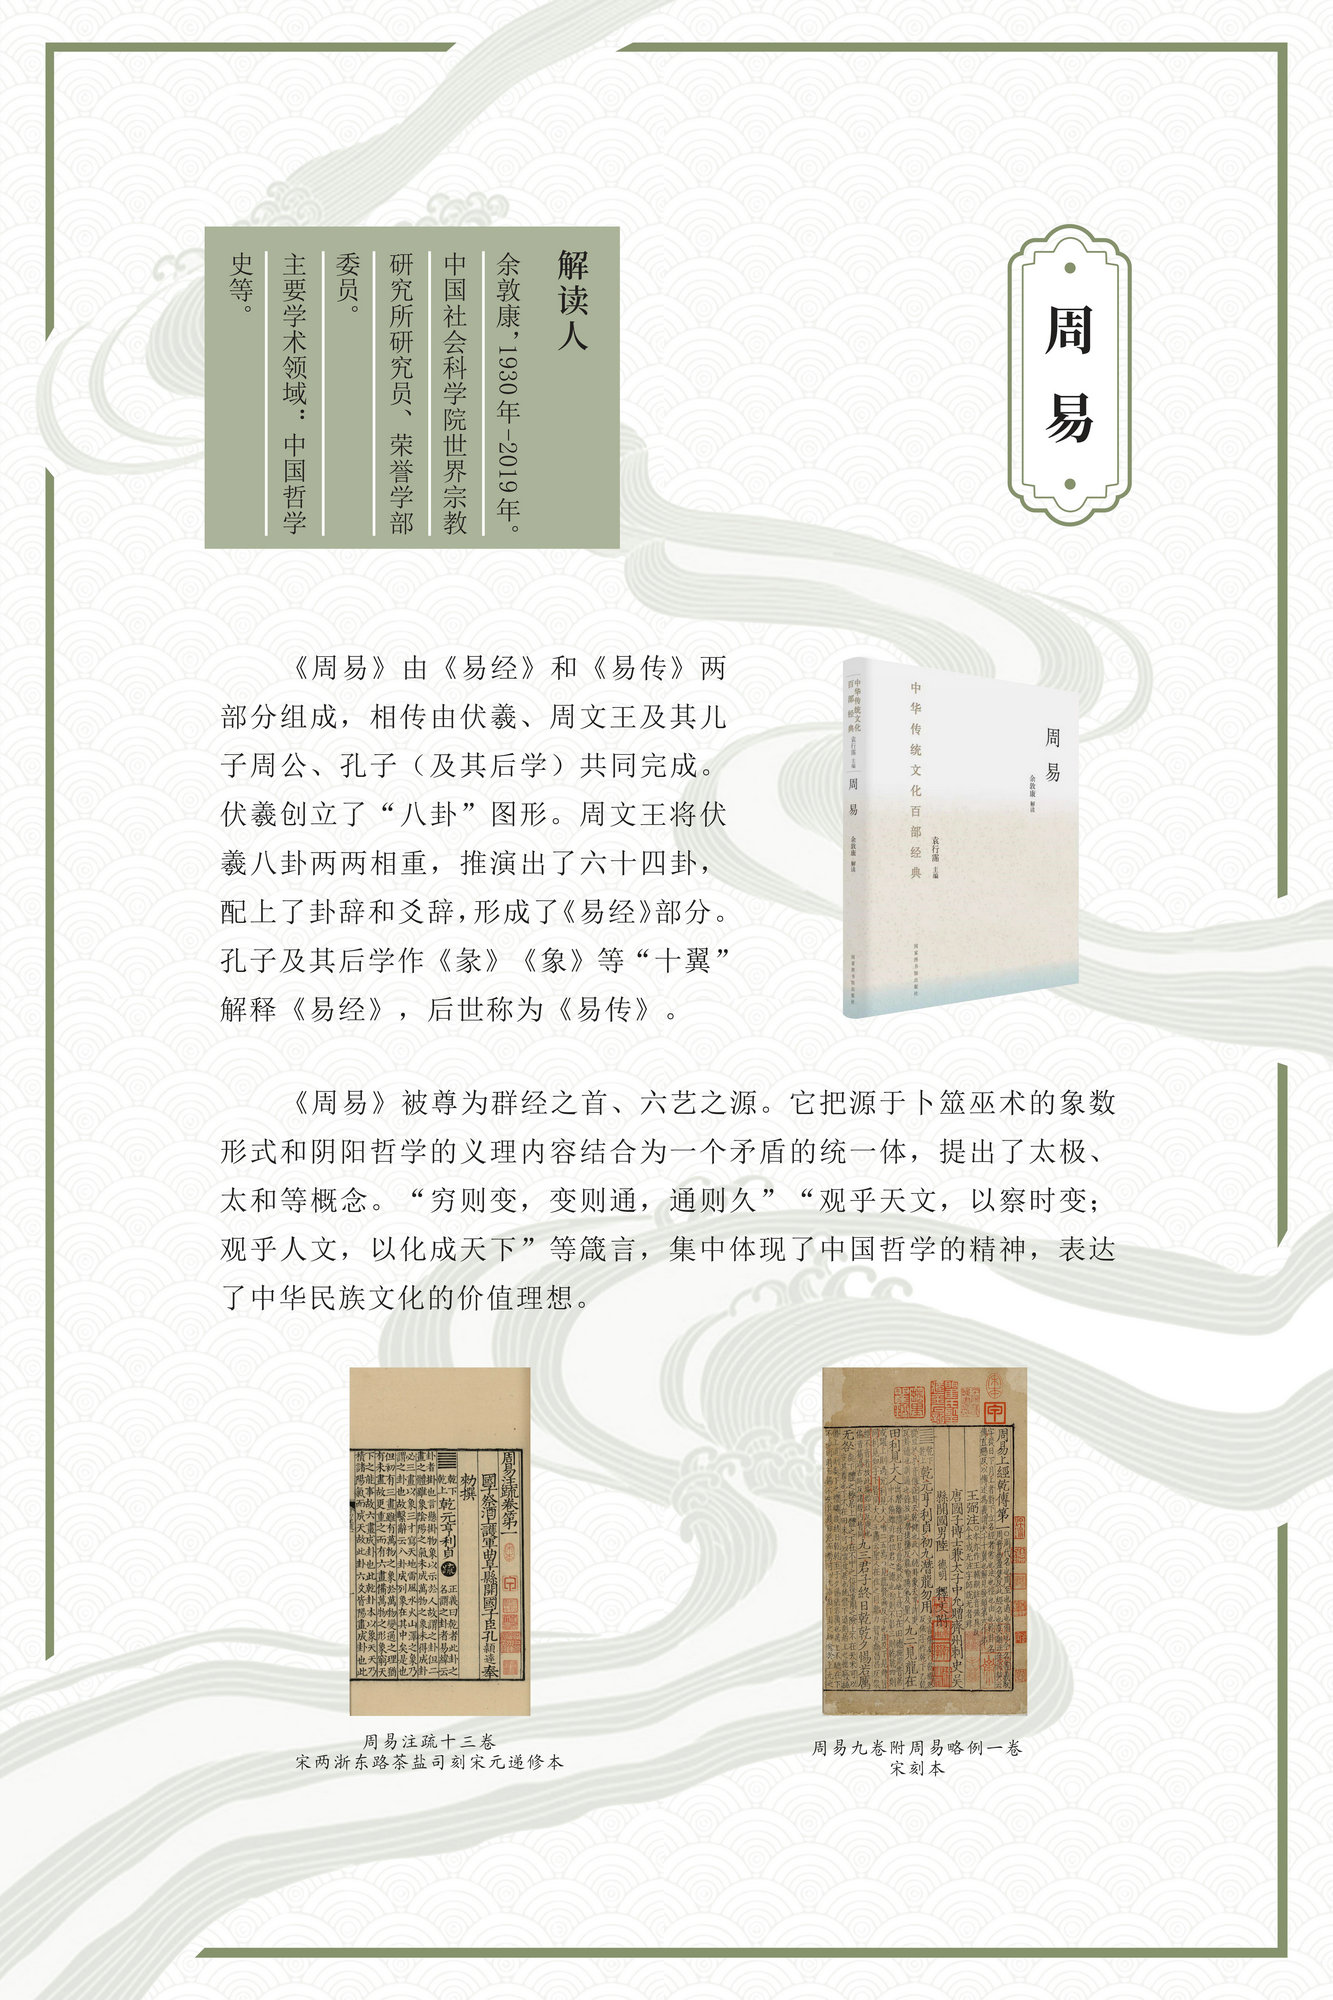 “激活经典 熔古铸今”——《中华传统文化百部经典》出版成果展_图3